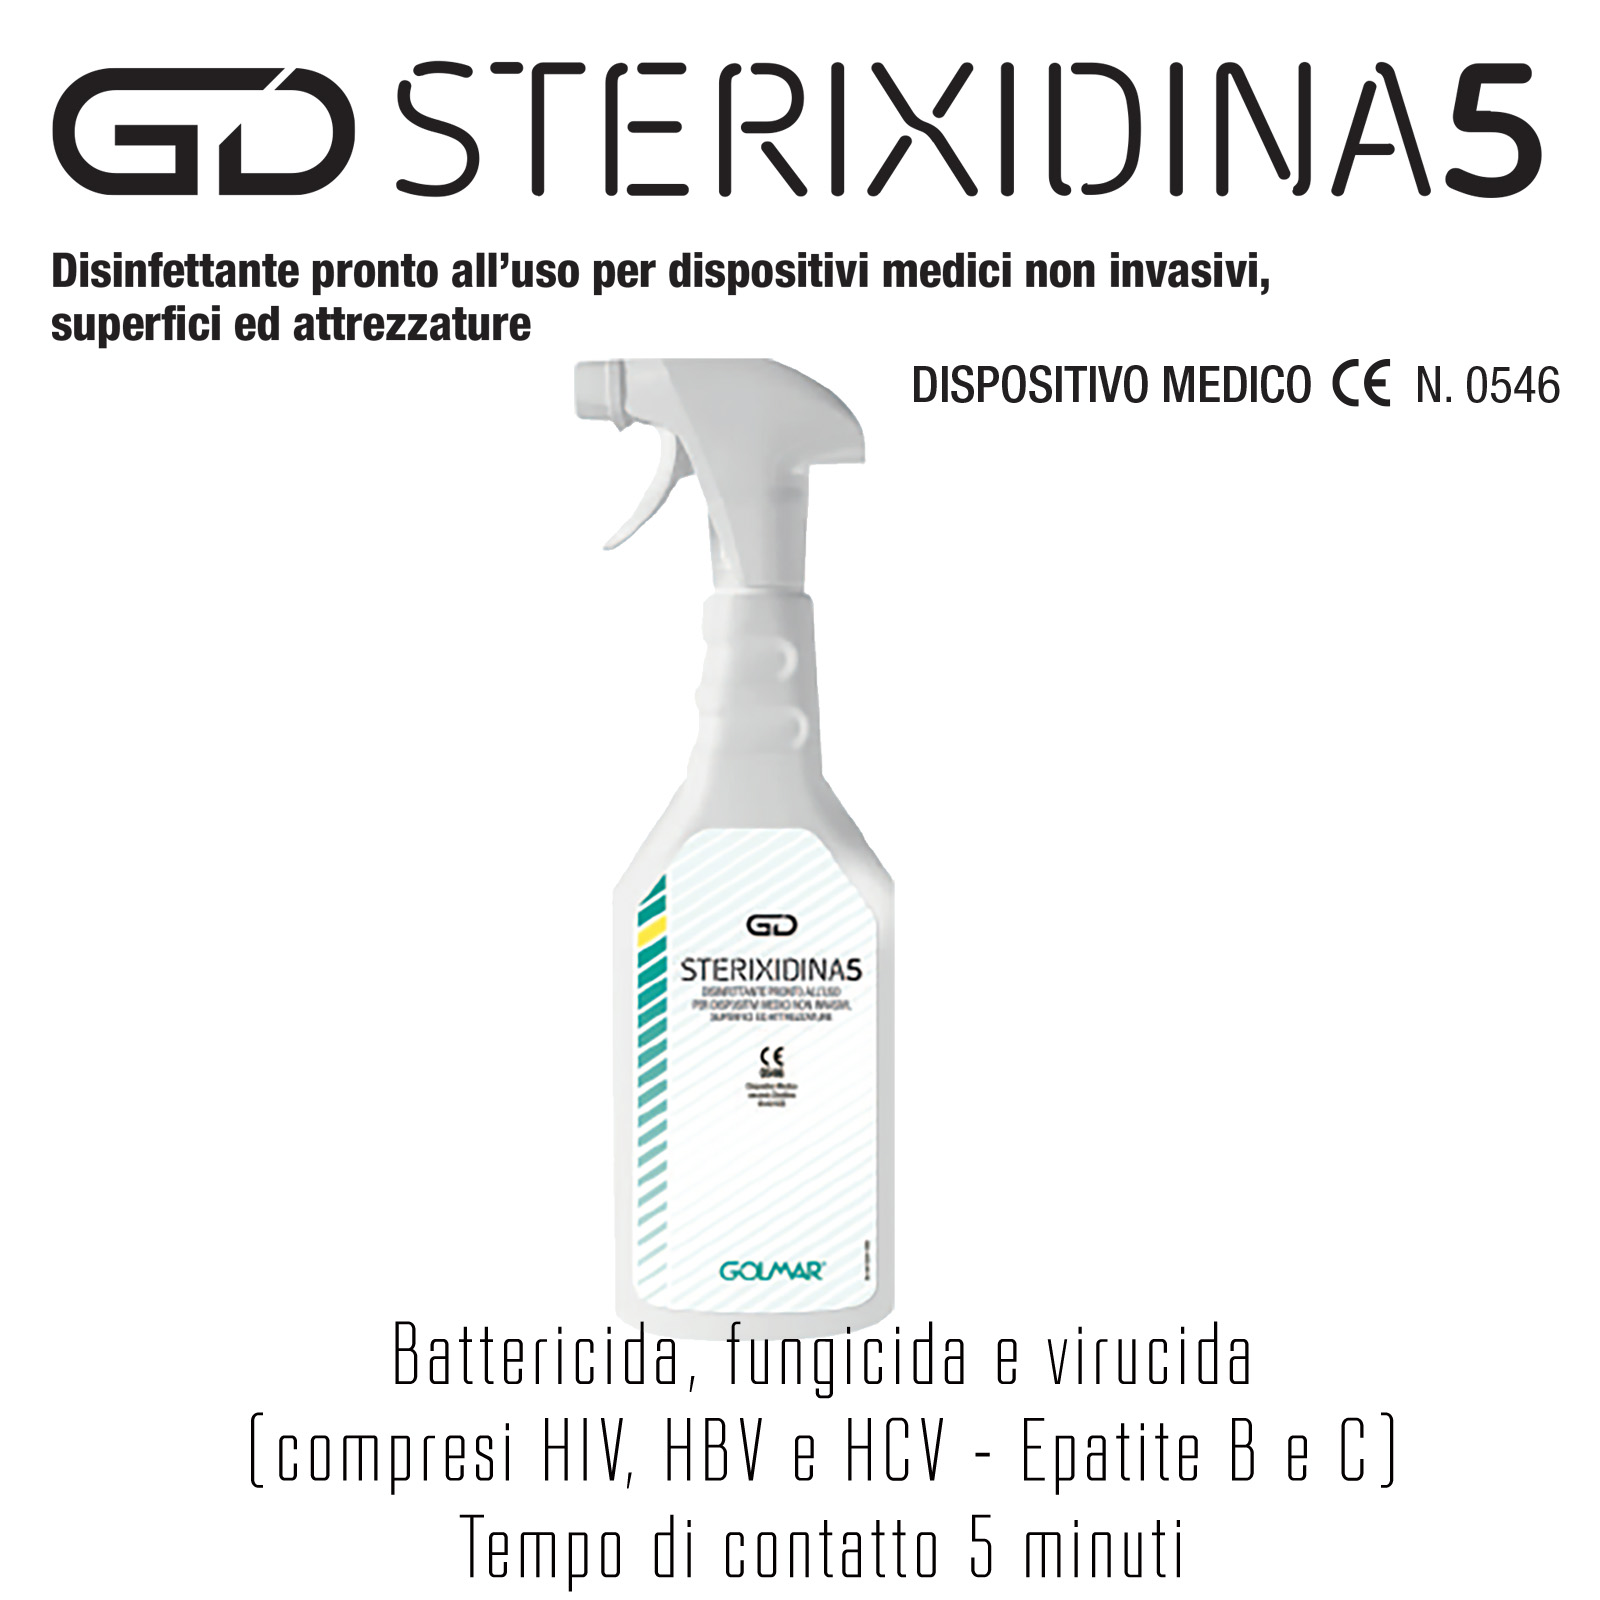 6 x GOLMAR GD STERIXIDINA 5 disinfettante pronto all’uso per dispositivi medici non invasivi, superfici ed attrezzature - 750 ml - confezione da n° 6 flaconi con 2 testine erogatrici